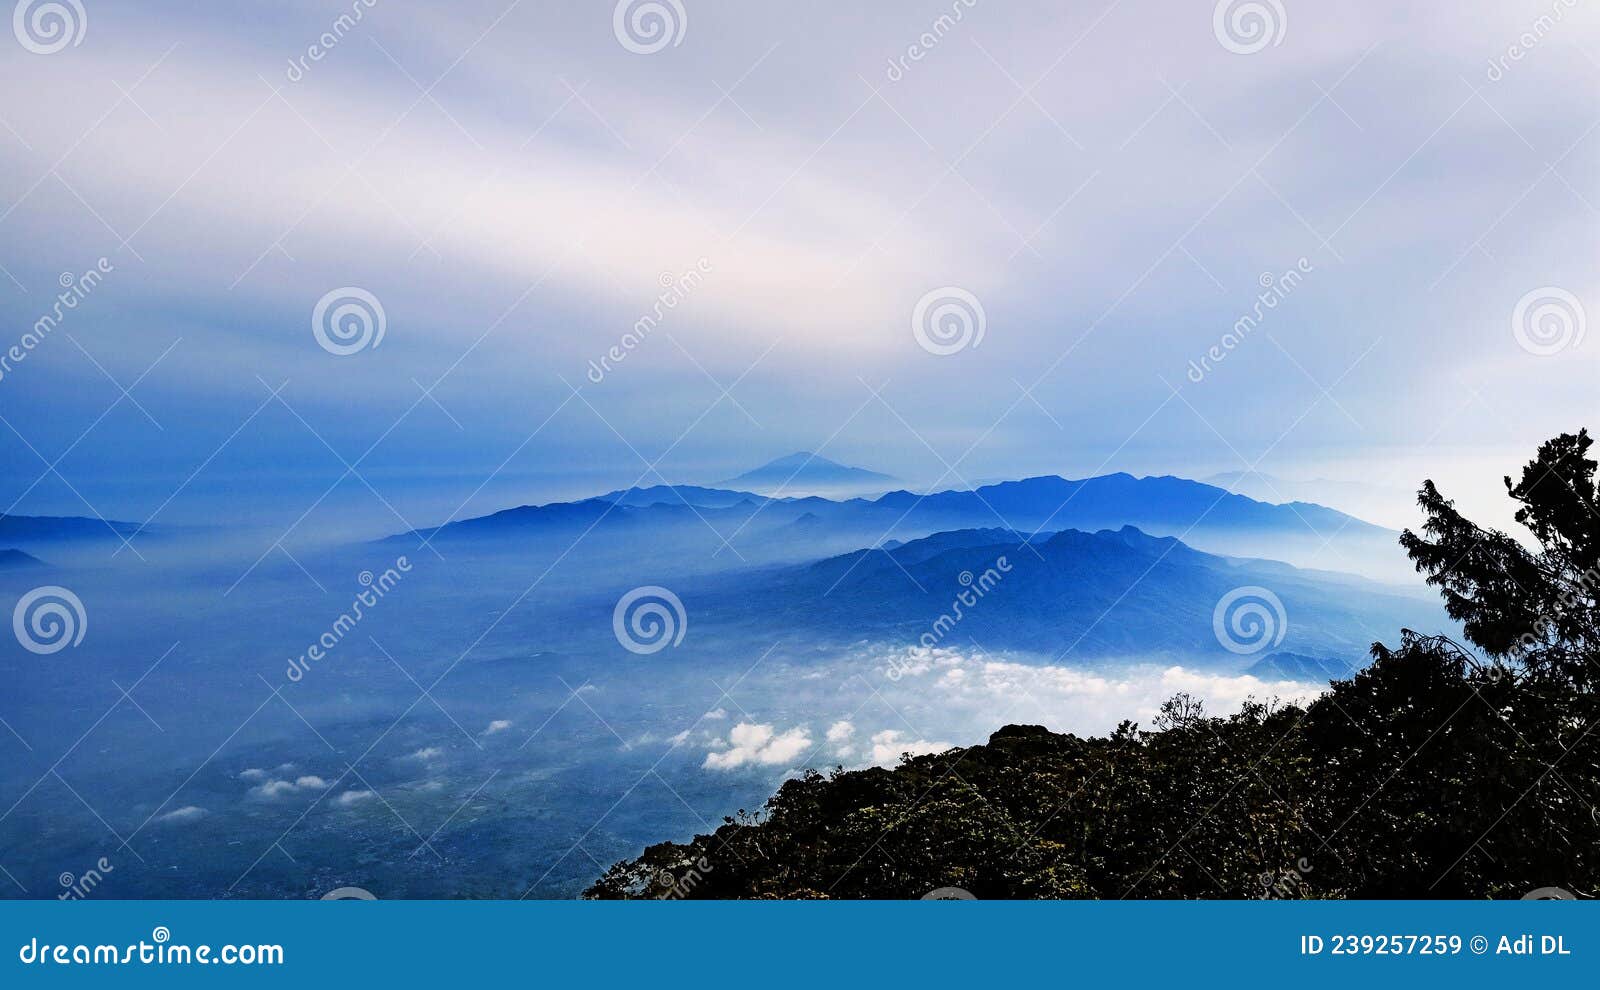 mountain nice simple fotografi cloud